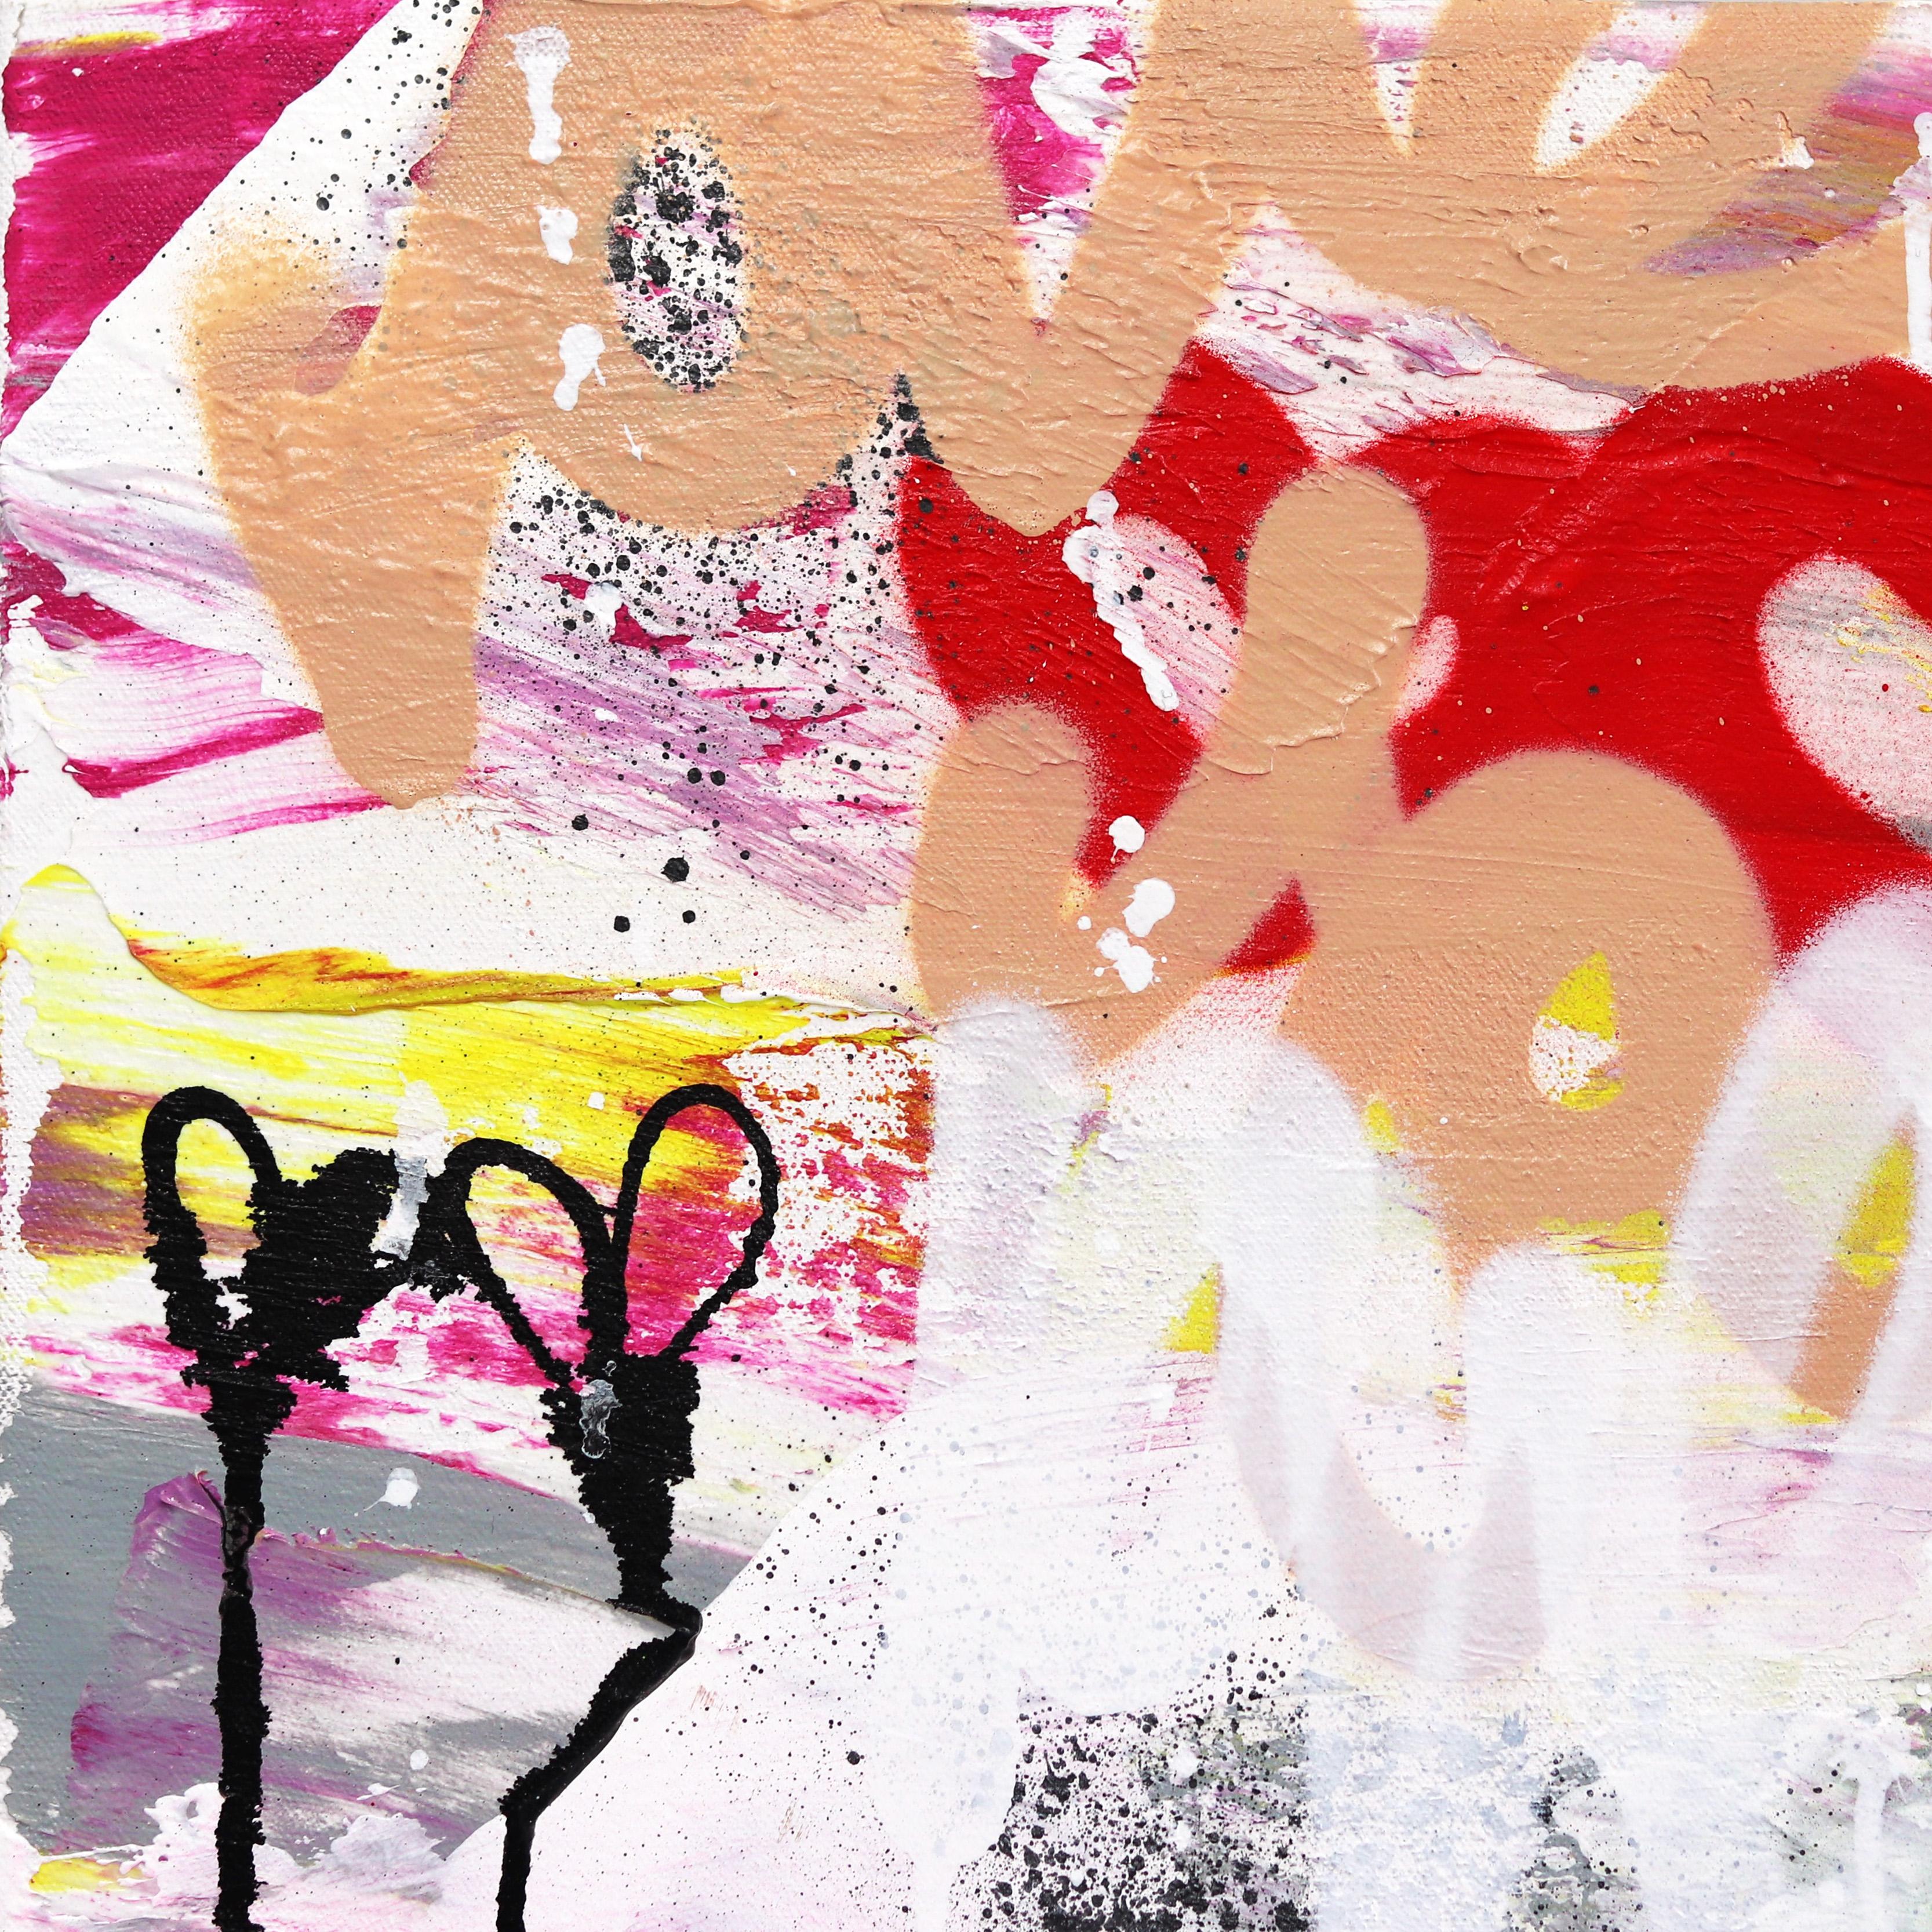 Die Künstlerin Amber Goldhammer aus Los Angeles malt dramatische abstrakte Kompositionen in Acryl auf Leinwand mit energischen Pinselstrichen. In ihren zeitgenössischen Gemälden drückt Goldhammer Emotionen aus, die einer stillen Poesie ähneln, und